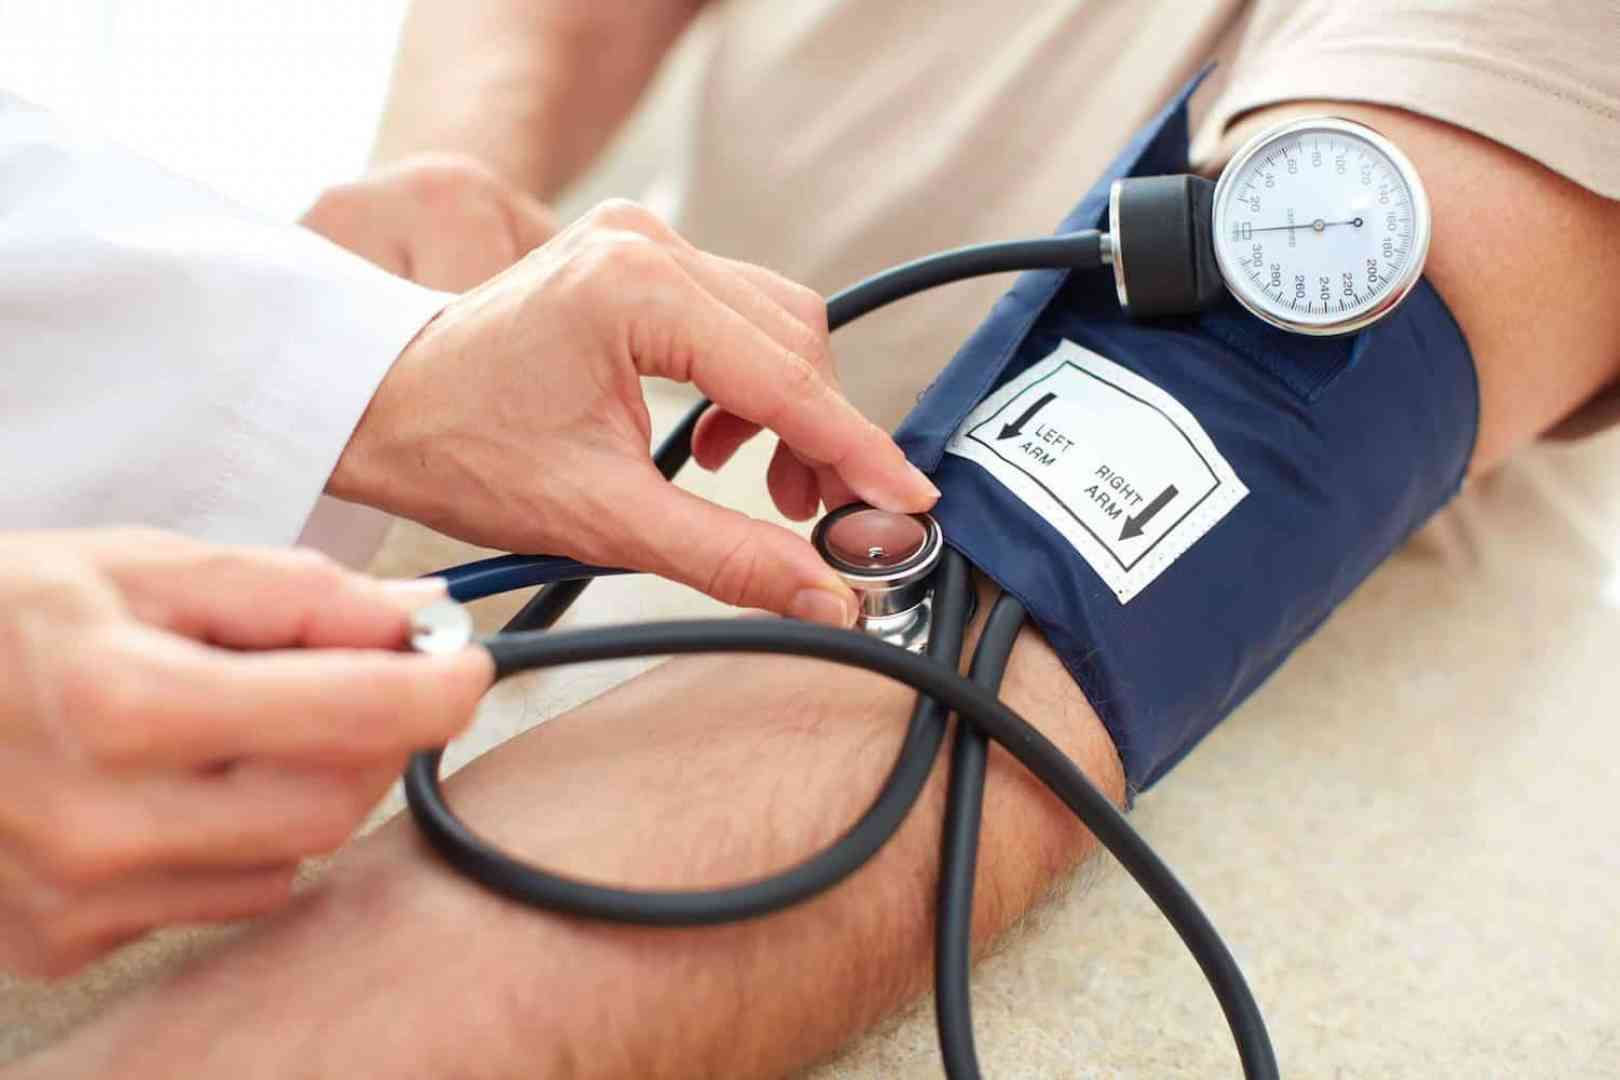 ما علاقة أدوية ارتفاع ضغط الدم بانخفاض وفيات كورونا؟ - كوفيد-19 - البيان